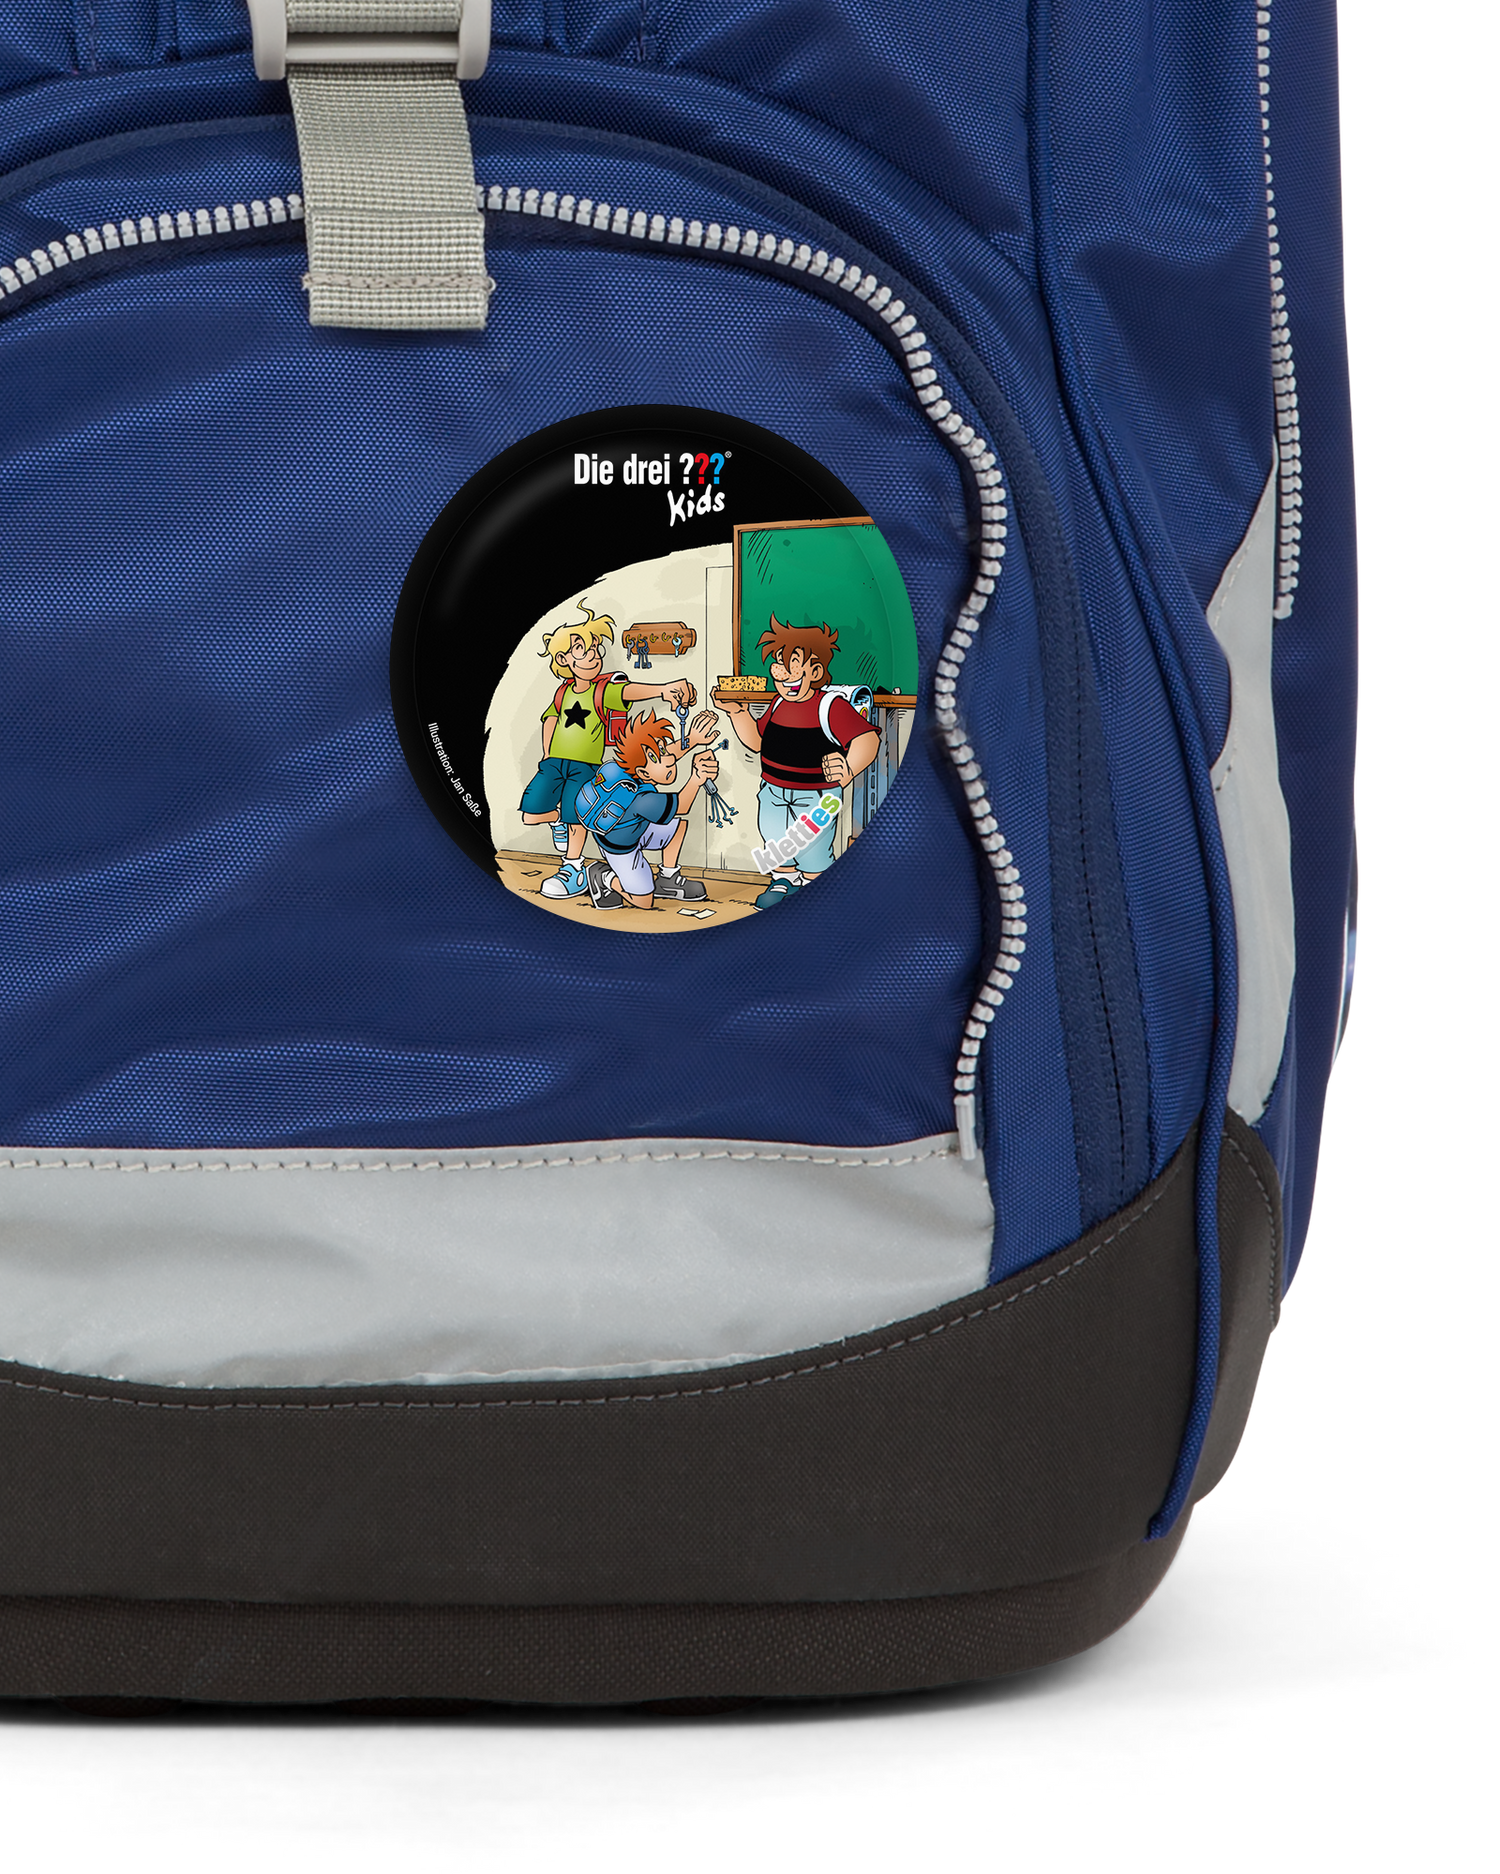 Die Drei Fragezeichen Klassenraum Klettie: Detail shot on an ergobag backpack